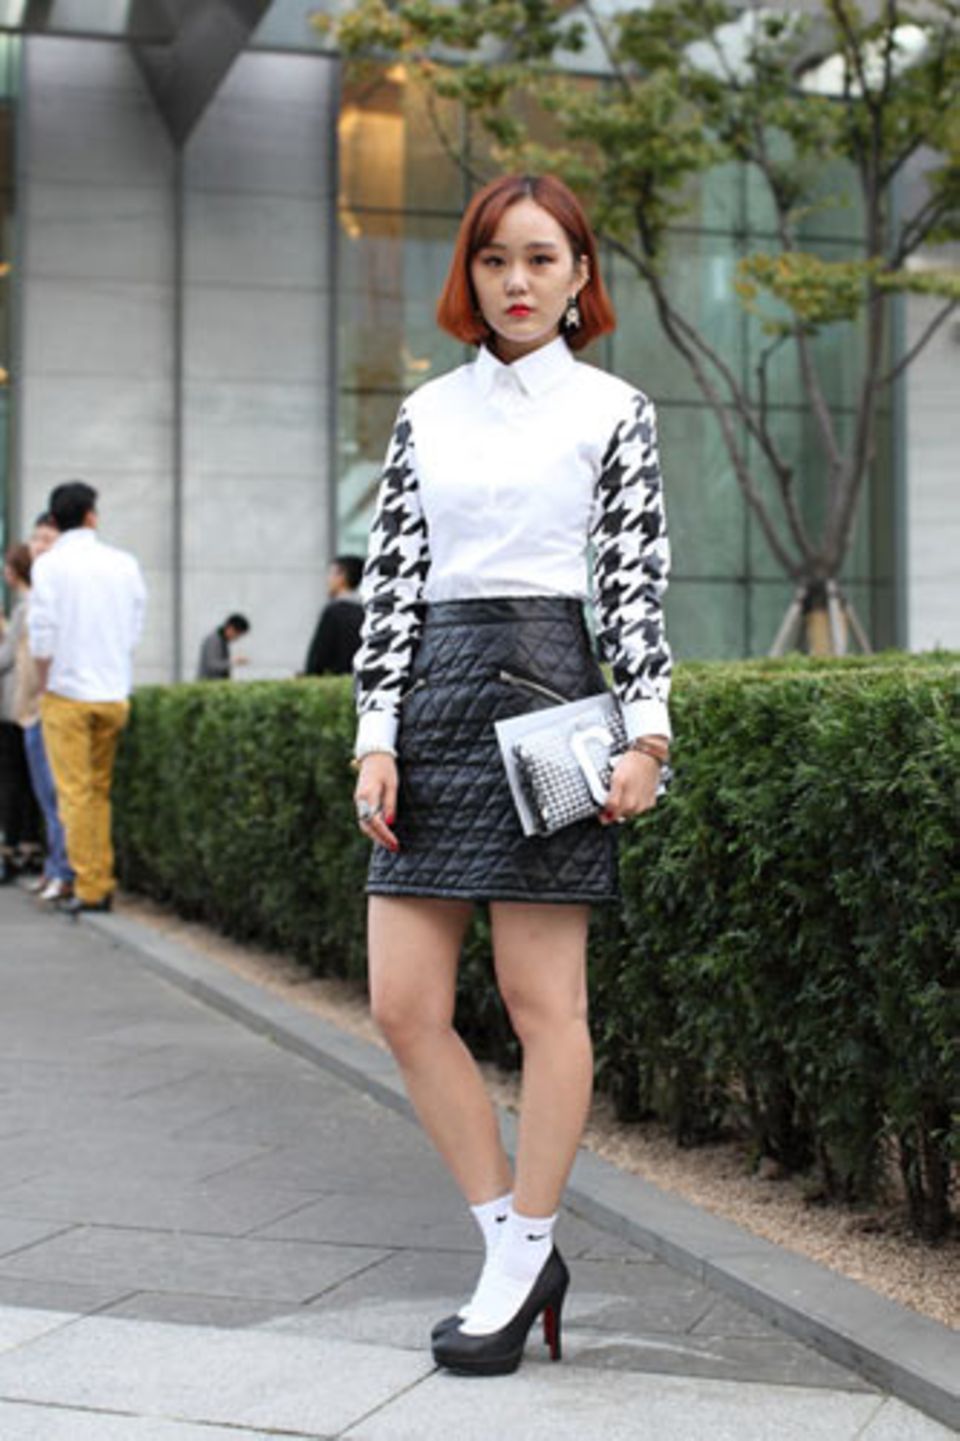 Wer hätte gedacht, dass weiße Tennissocken so schick sein können? Park Ji Gyung trägt sie zu Pumps, einem gesteppten Minirock und einer Pepita-Bluse mit passender Clutch (beides von Gluwa).